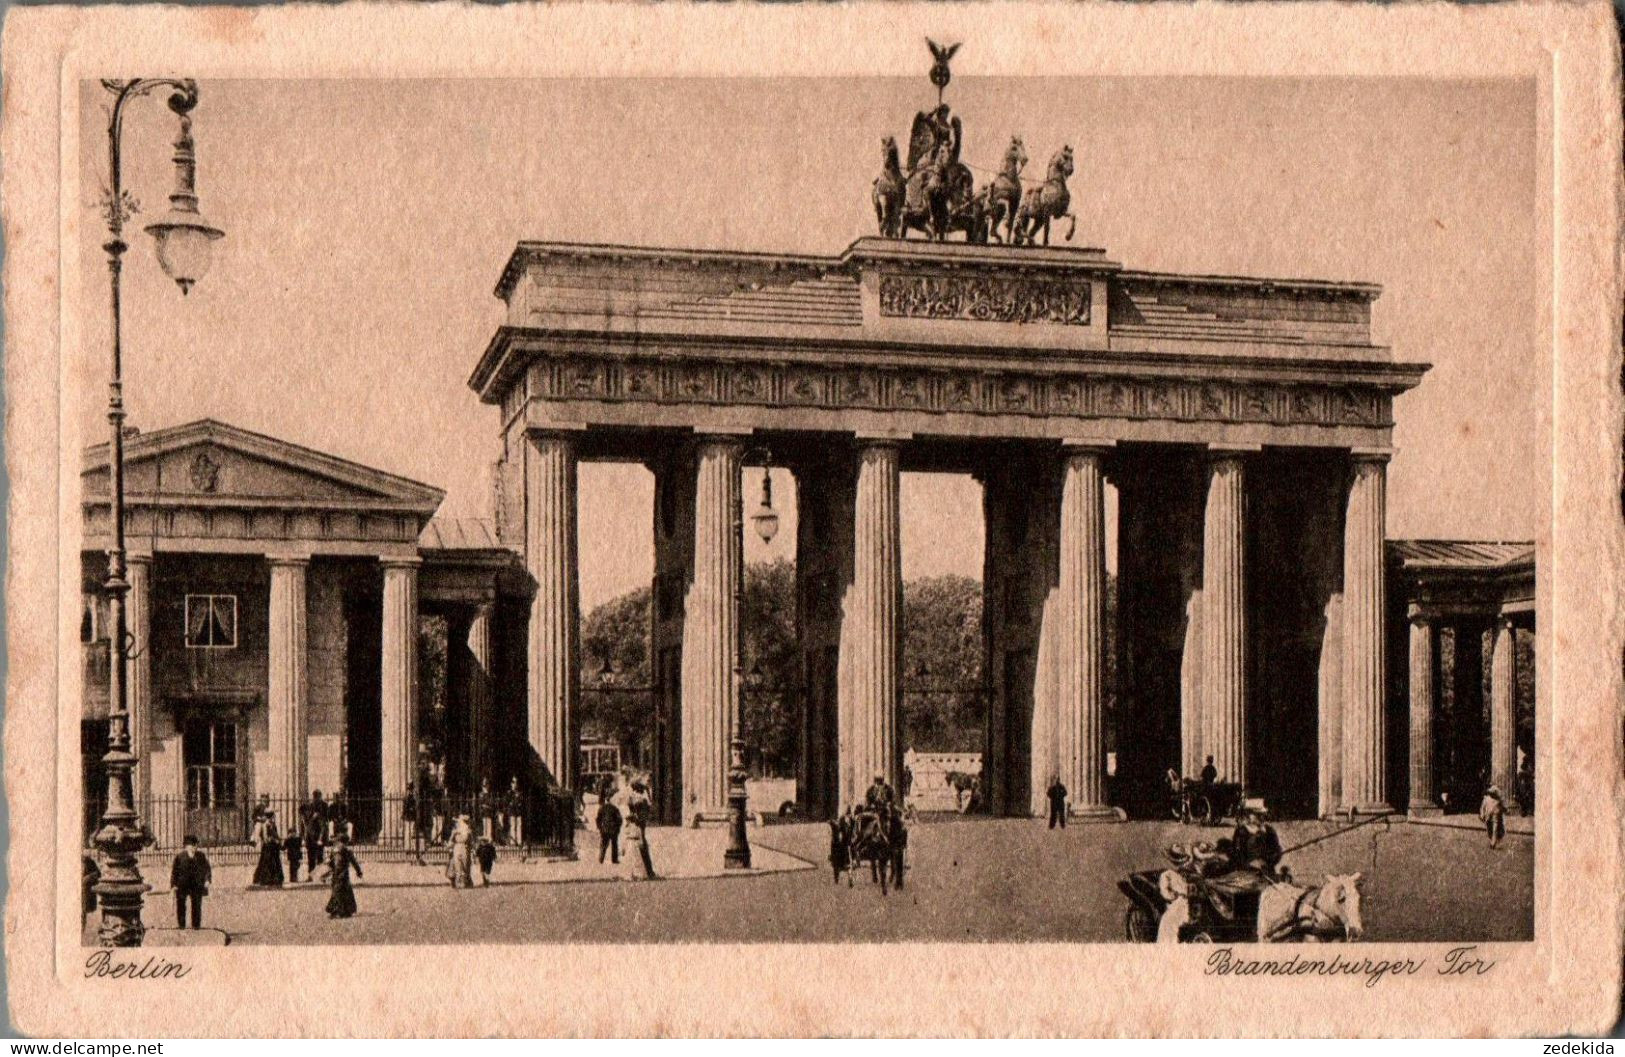 H0051 - Berlin - Brandenburger Tor - Kupfertiefdruck - I. Wollstein - Brandenburger Door